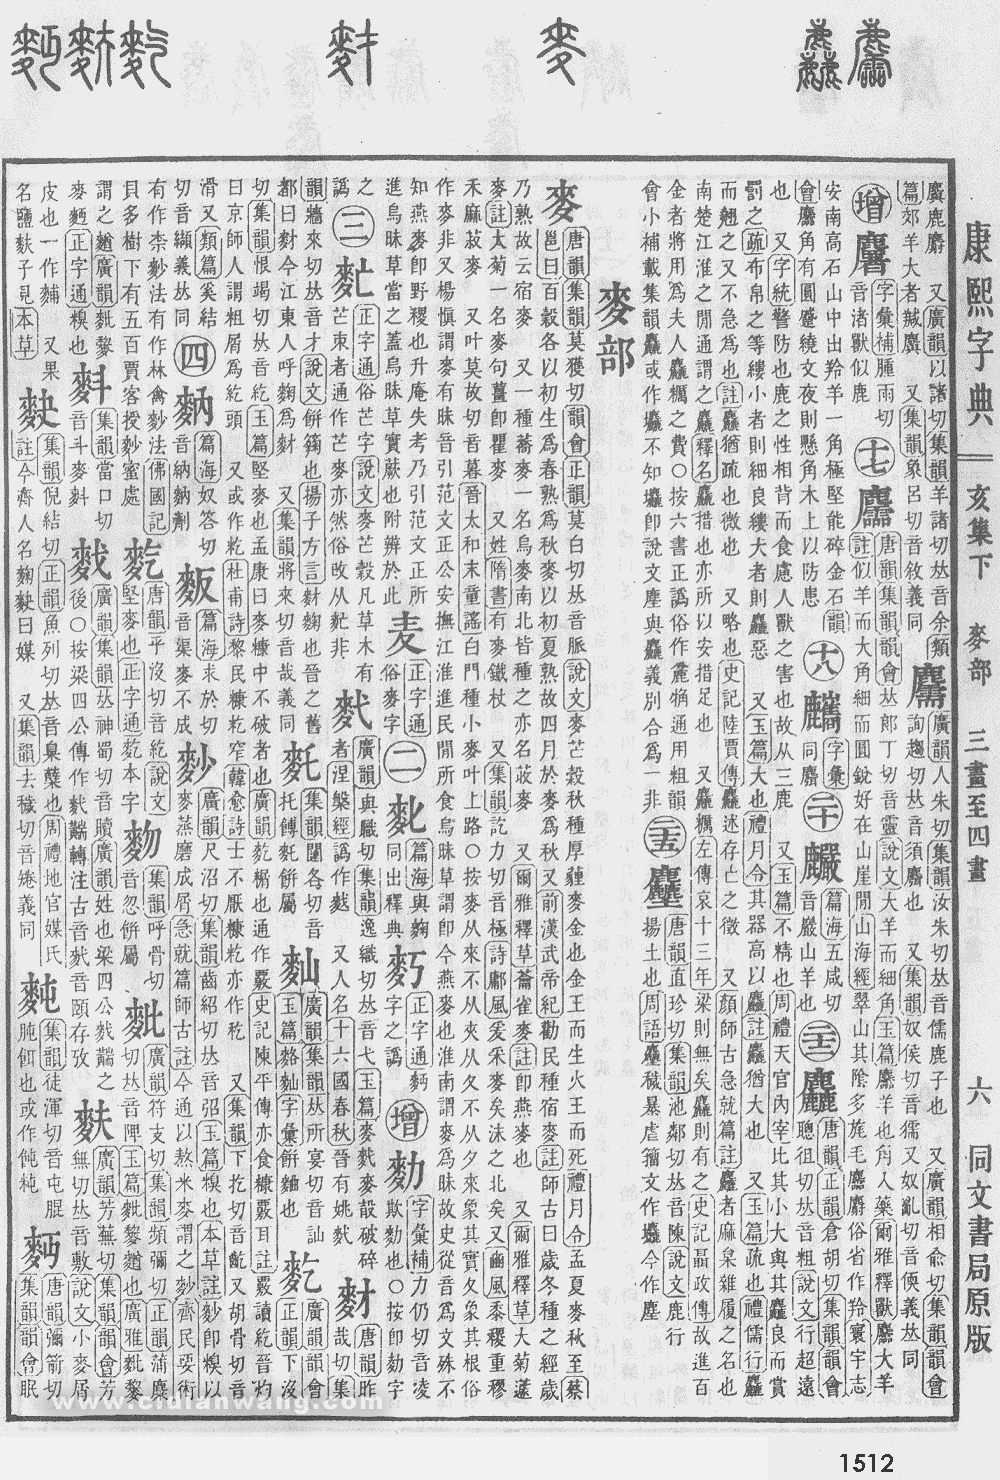 康熙字典掃描版第1512頁